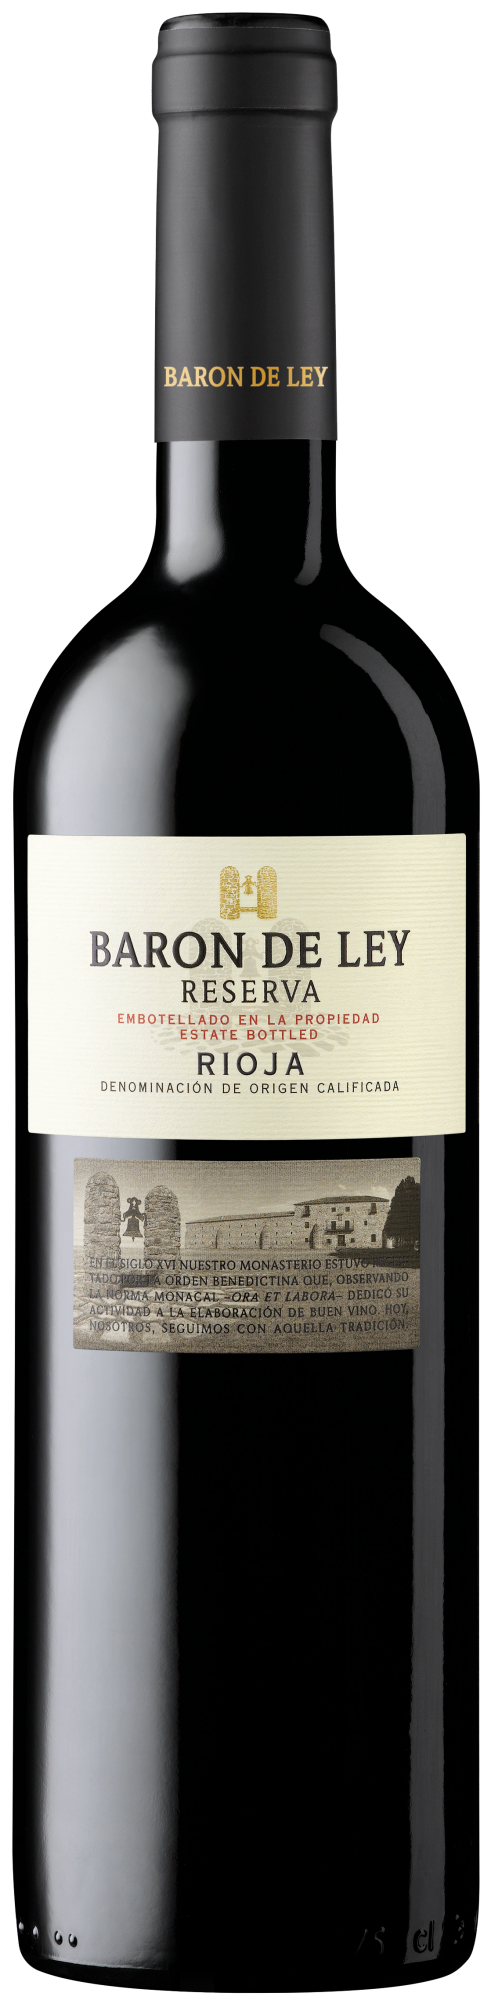 2019-Baron de ley Rioja Reserva Tinto